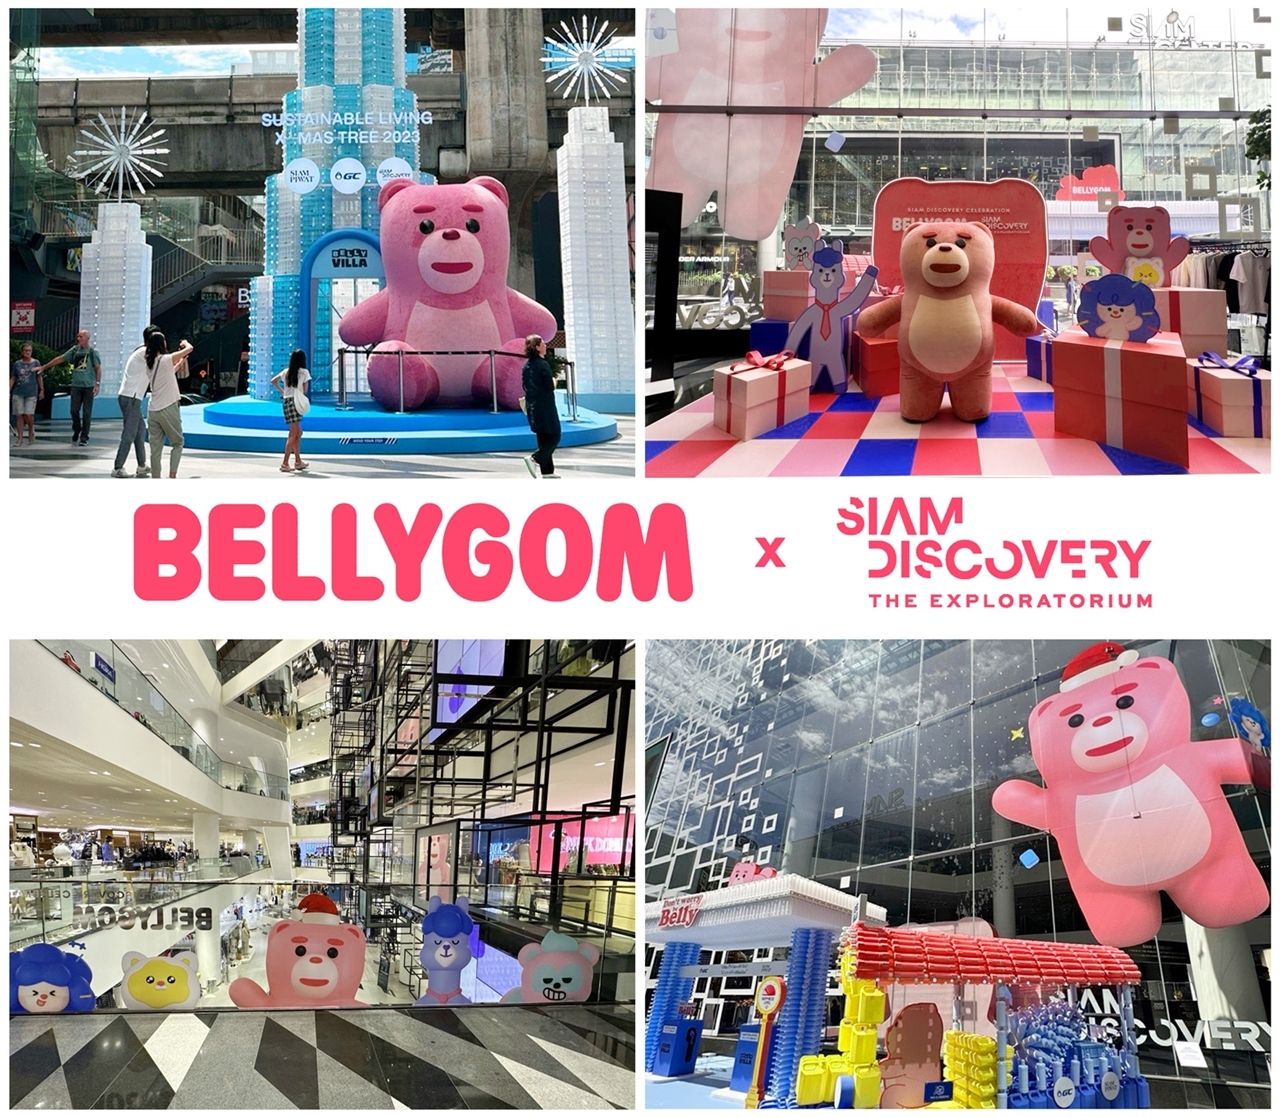 롯데홈쇼핑의 태국 최대 쇼핑몰 ‘시암 디스커버리’서 벨리곰 특별전시